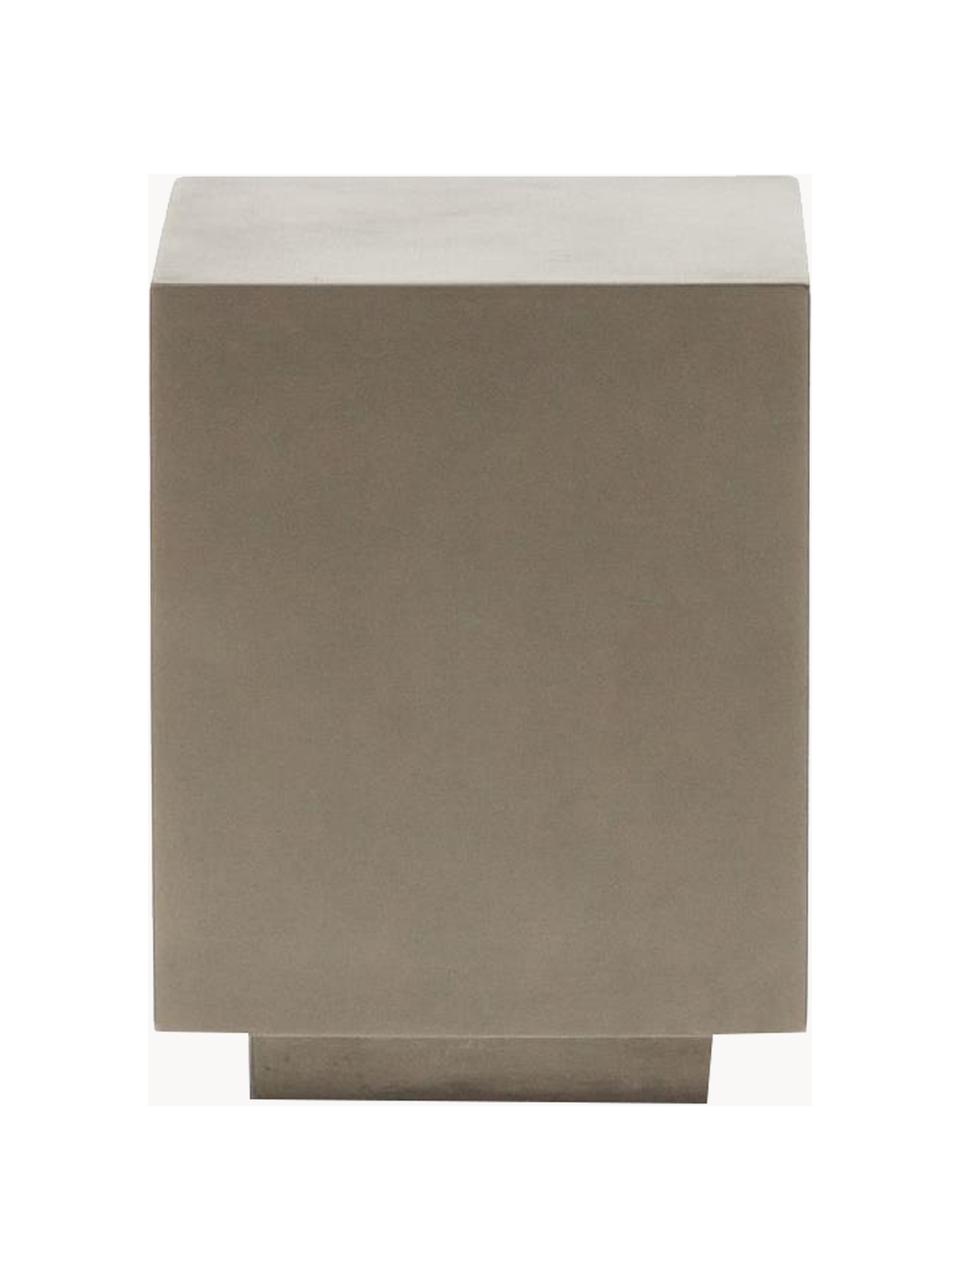 Tuin bijzettafel Rustella, 100% cementvezel, Greige, B 35 x H 46 cm